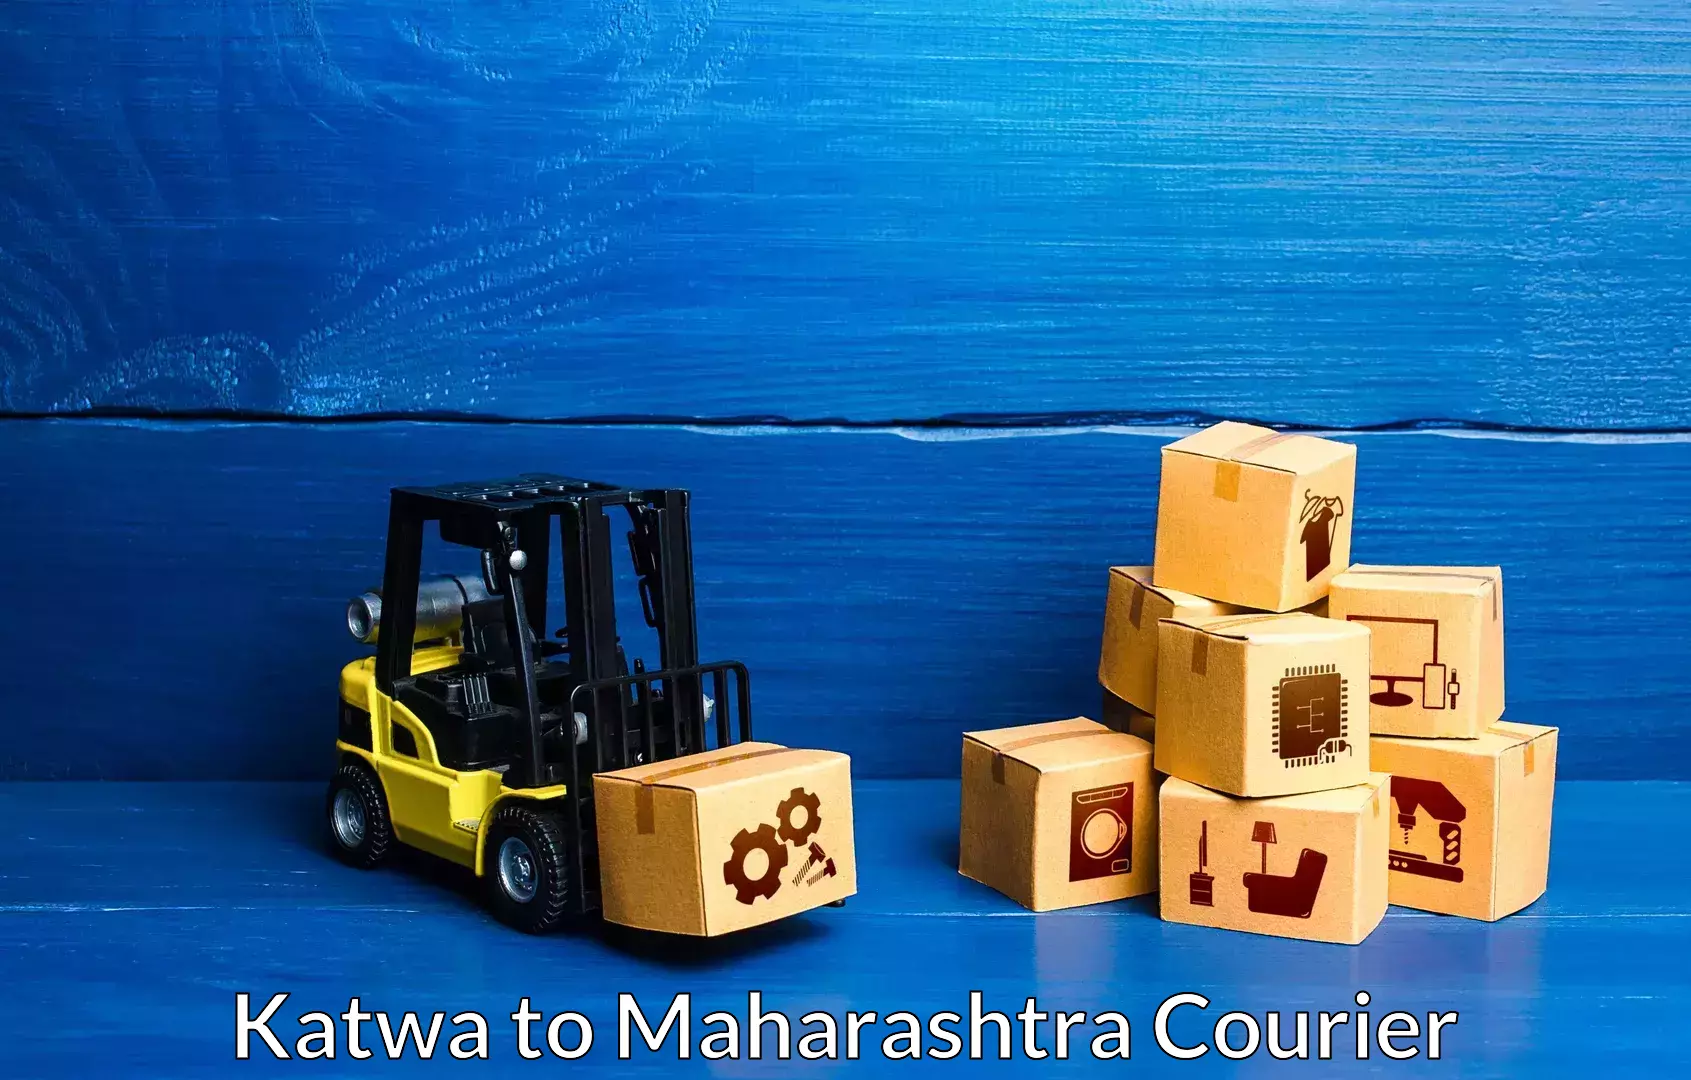 Furniture moving experts Katwa to Maharashtra